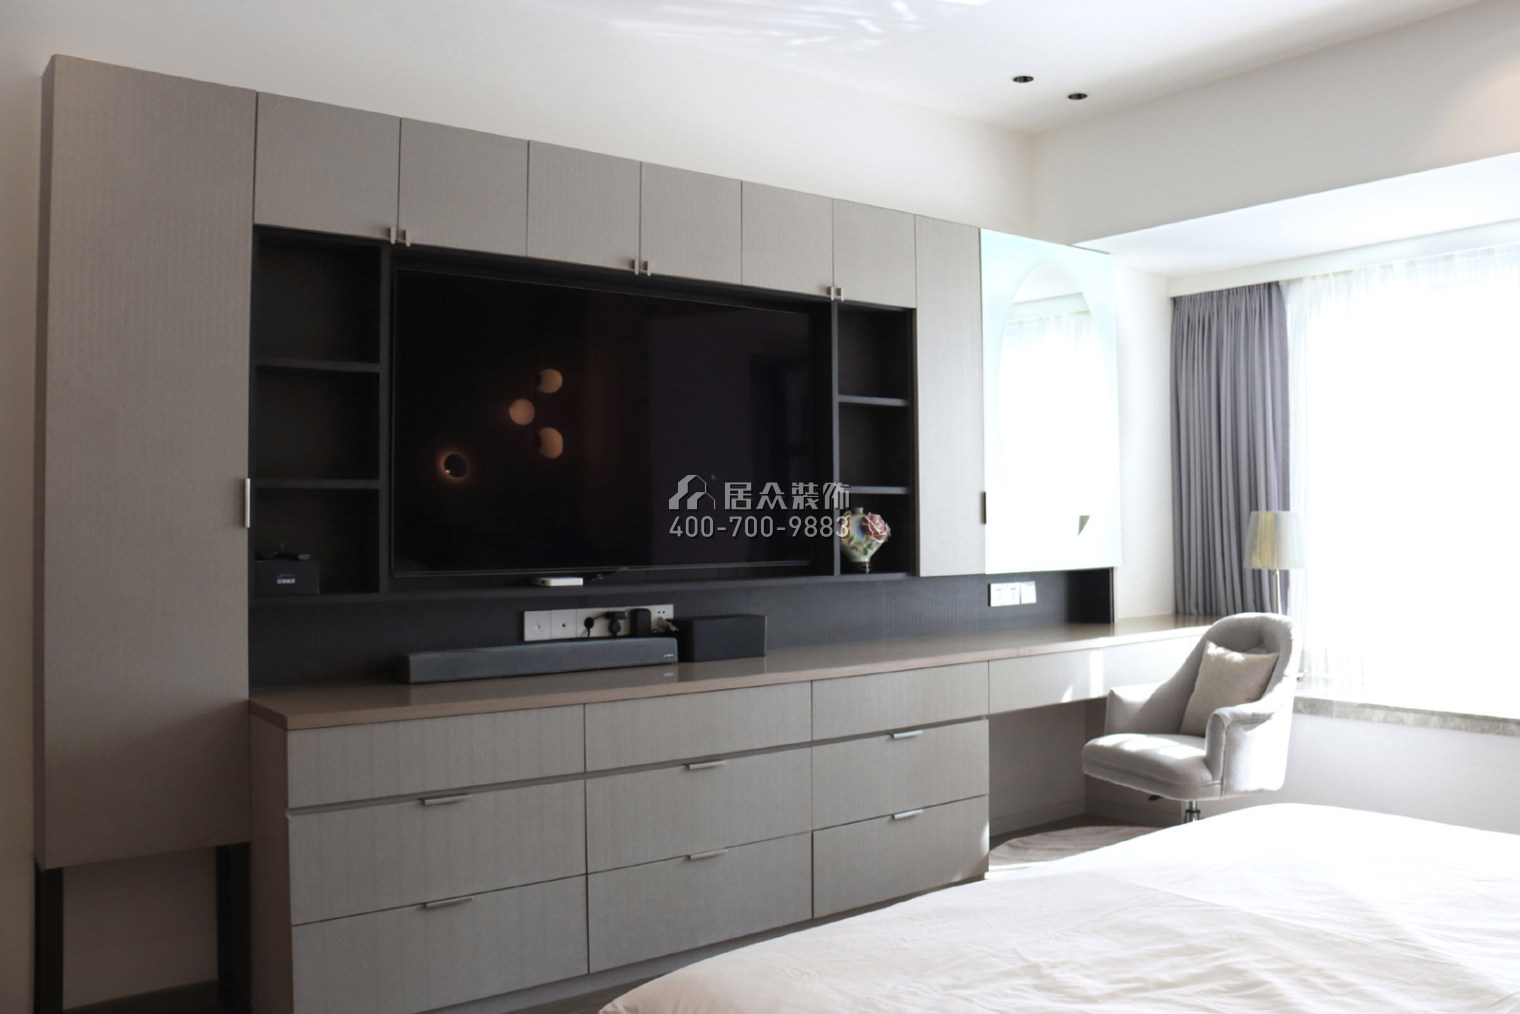 華潤城潤府二期206平方米現代簡約風格平層戶型客廳裝修效果圖